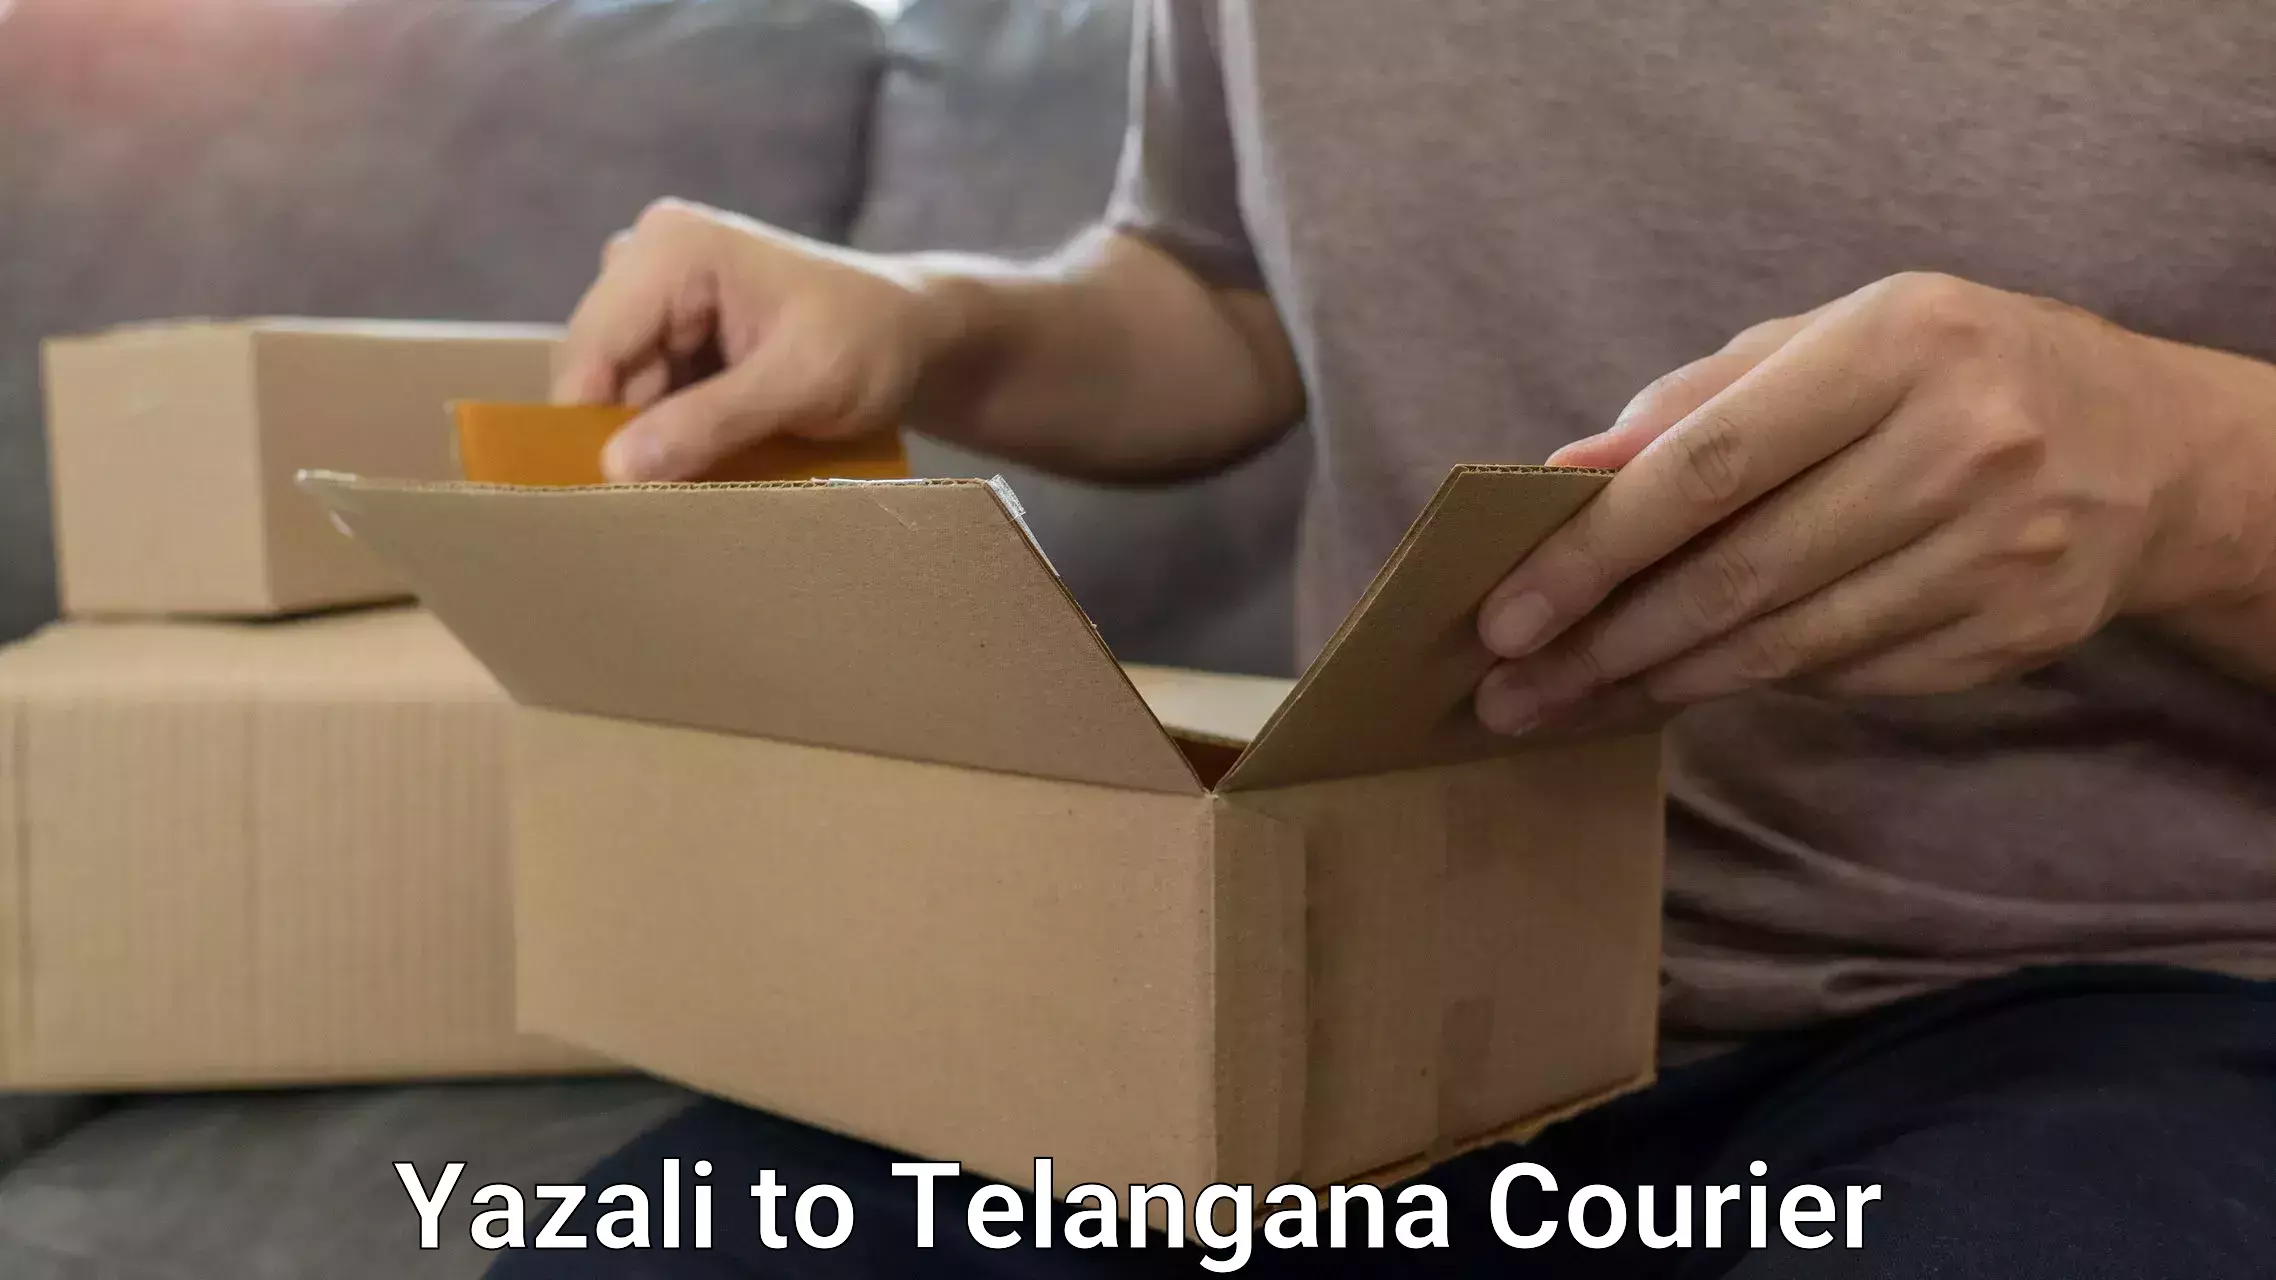 Efficient luggage delivery Yazali to Telangana